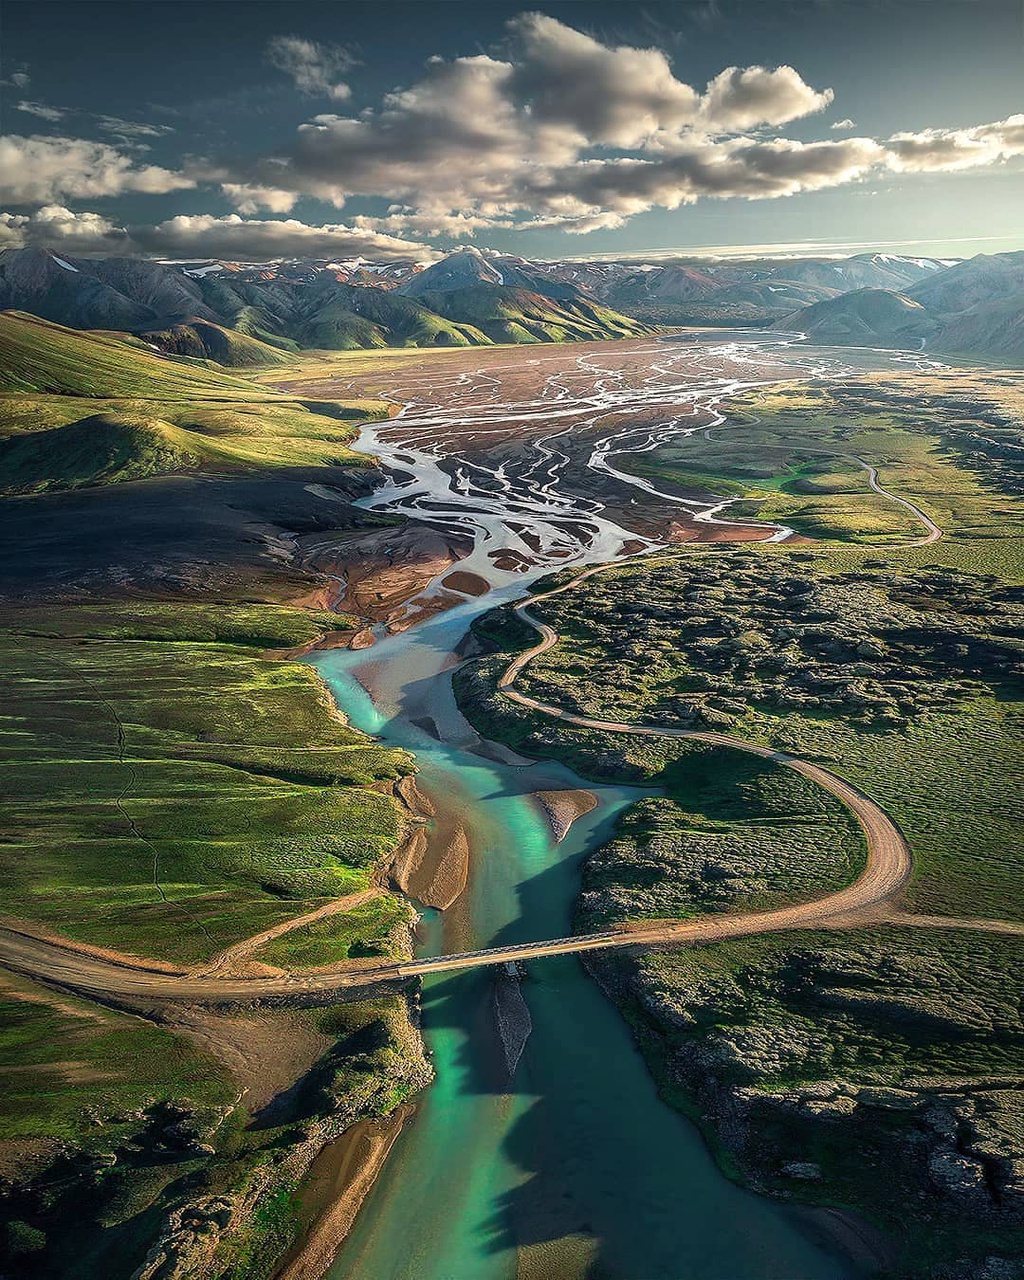 Iceland hóa thước phim viễn tưởng với những miền đất màu xanh